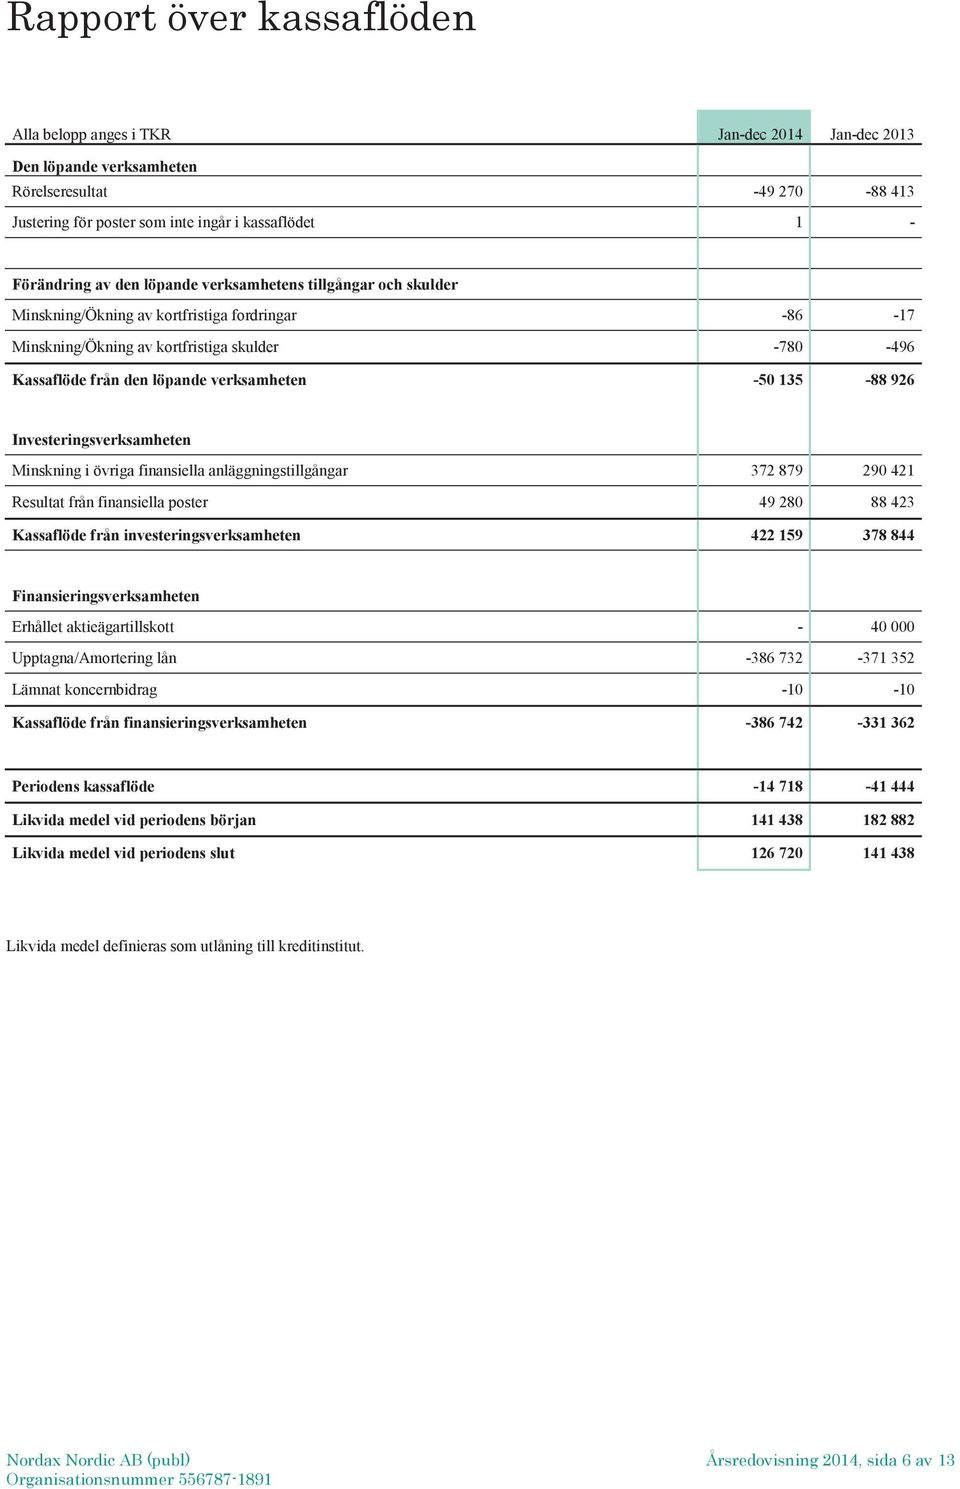 Investeringsverksamheten Minskning i övriga finansiella anläggningstillgångar 372 879 290 421 Resultat från finansiella poster 49 280 88 423 Kassaflöde från investeringsverksamheten 422 159 378 844